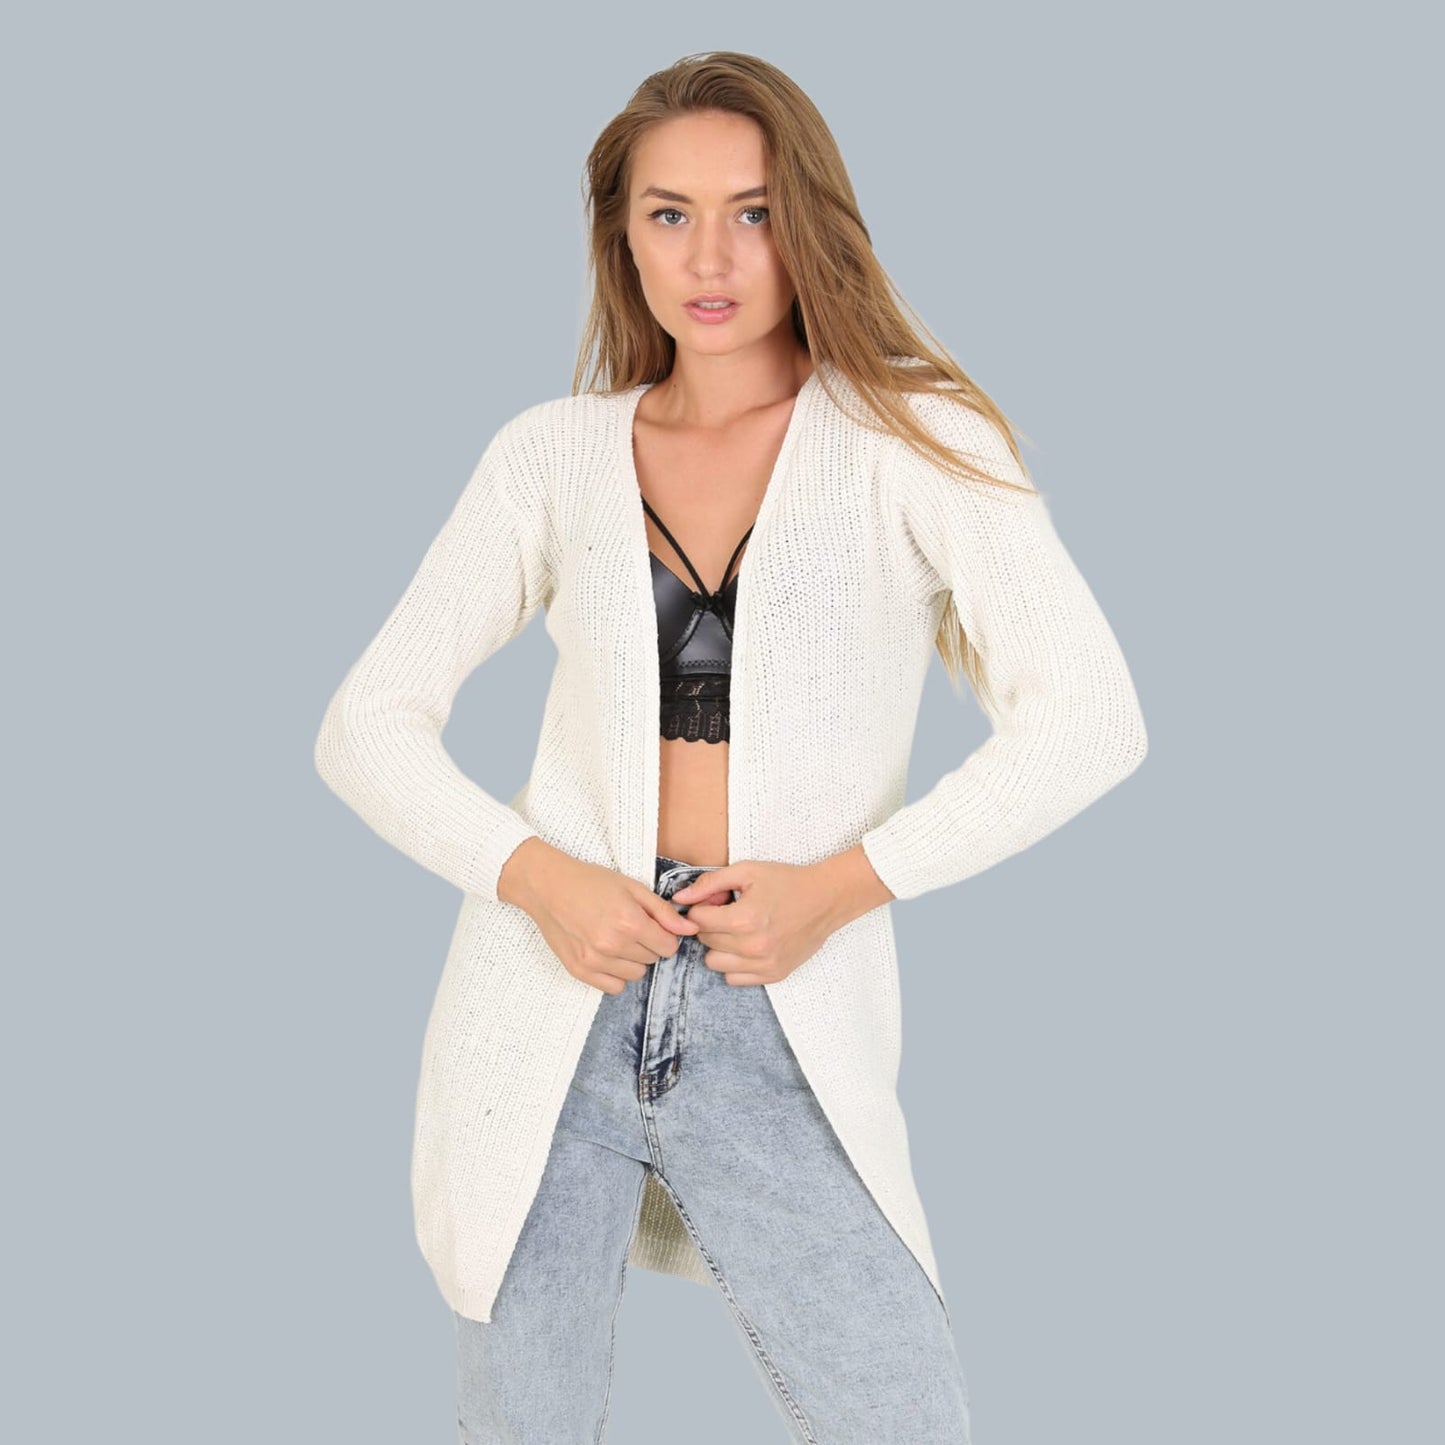 Xhaket (Blaser)Xhaketë e Trikotuar Lonca #LoncaKjo xhaketë e trikotuar vjen e hapur dhe pa mbyllje përpara. E përshtatëshme per të gjitha masat e trupit dhe me ngjyrë të bardhë. 